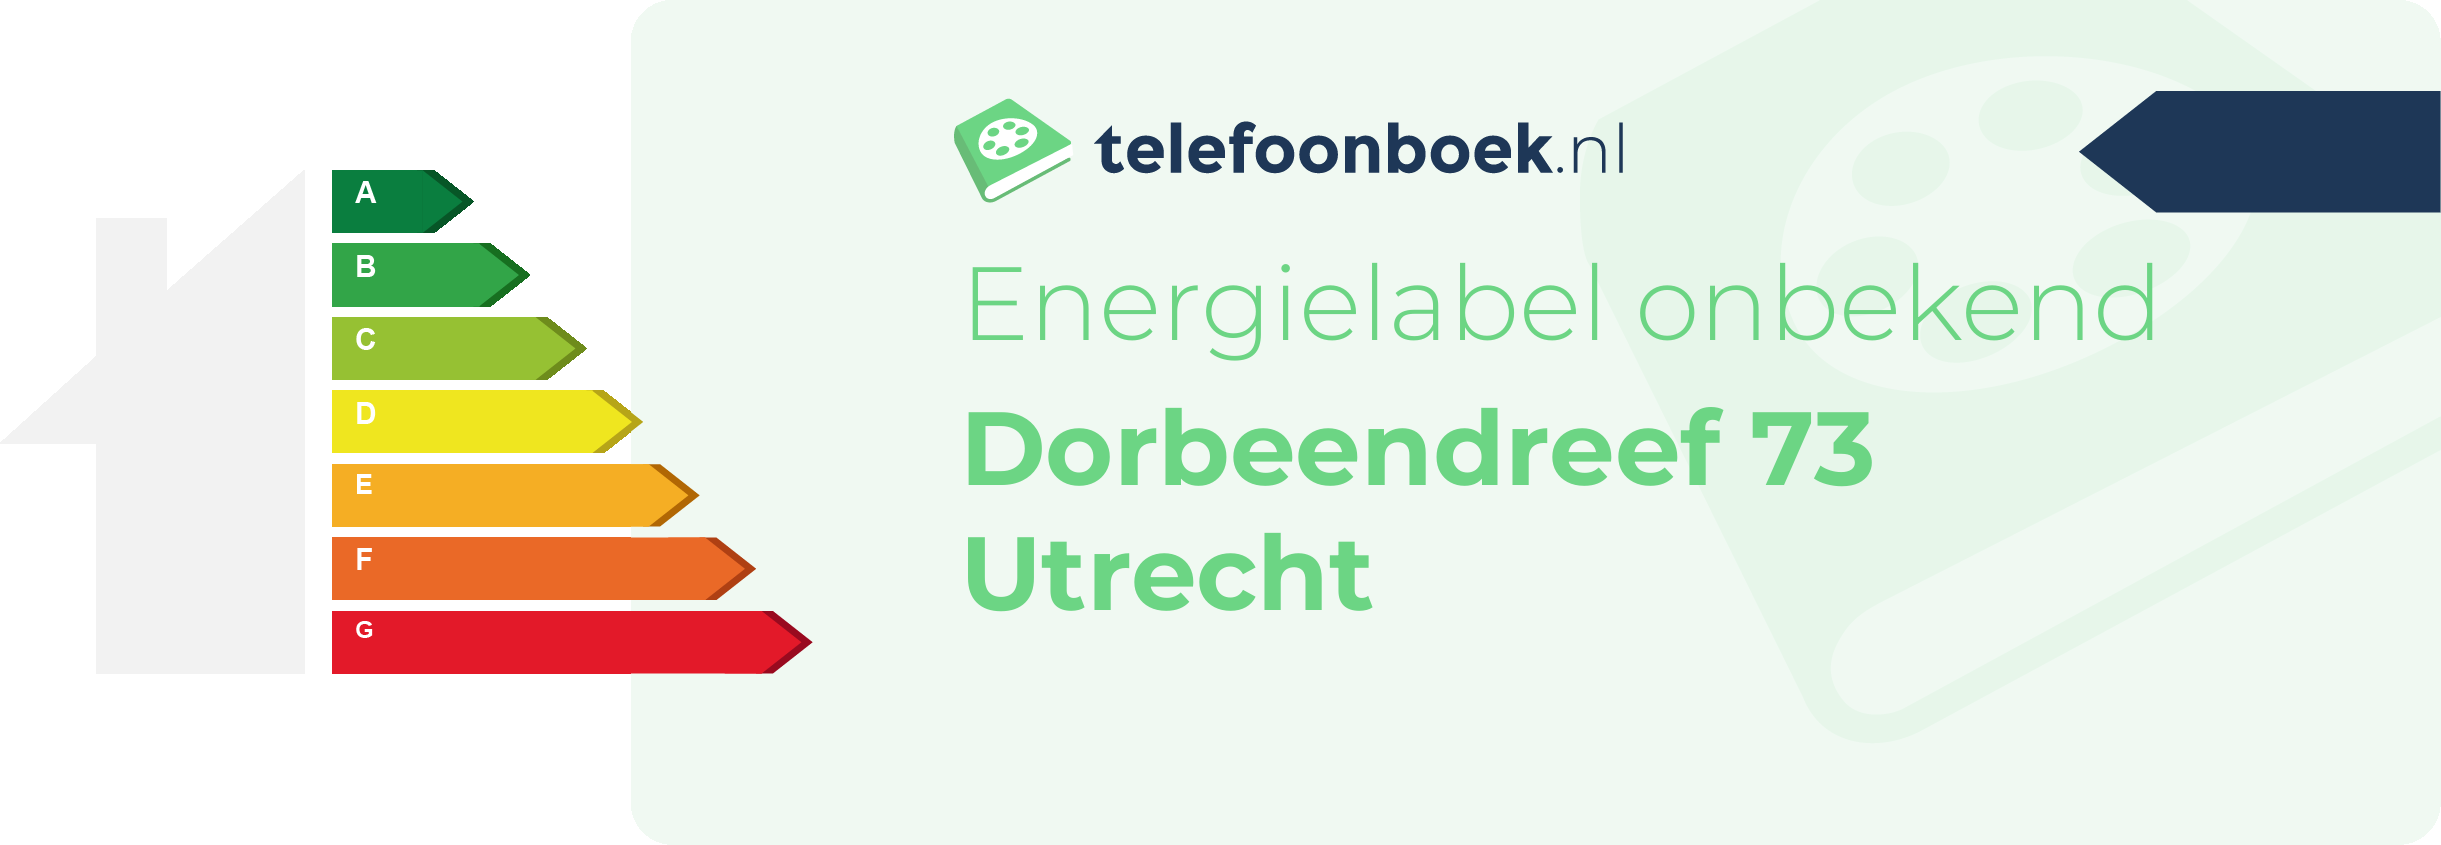 Energielabel Dorbeendreef 73 Utrecht